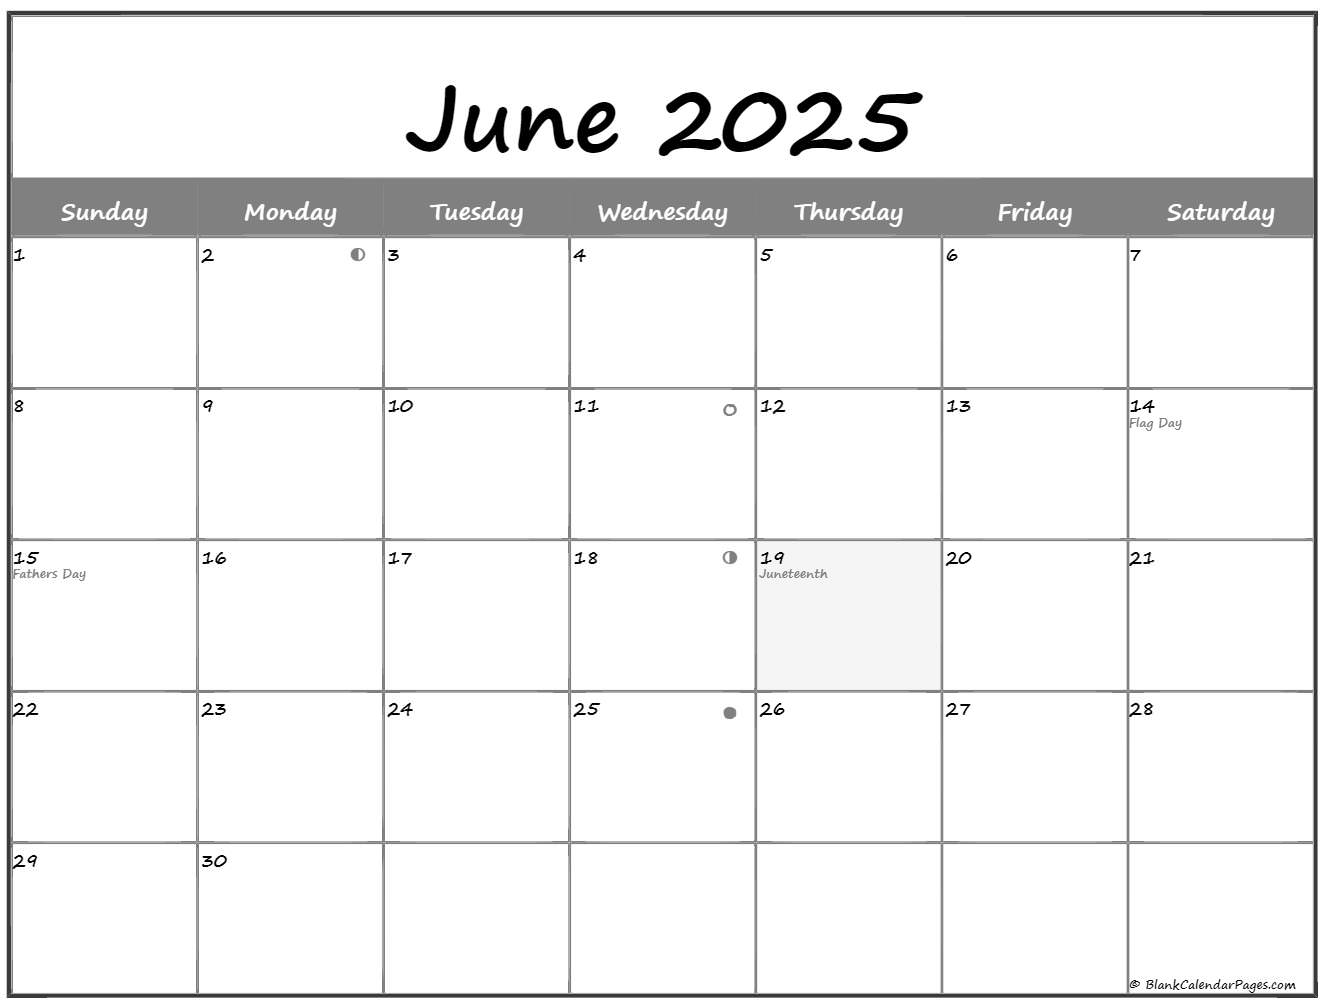 July 2025 Thru June 2025 Calendar